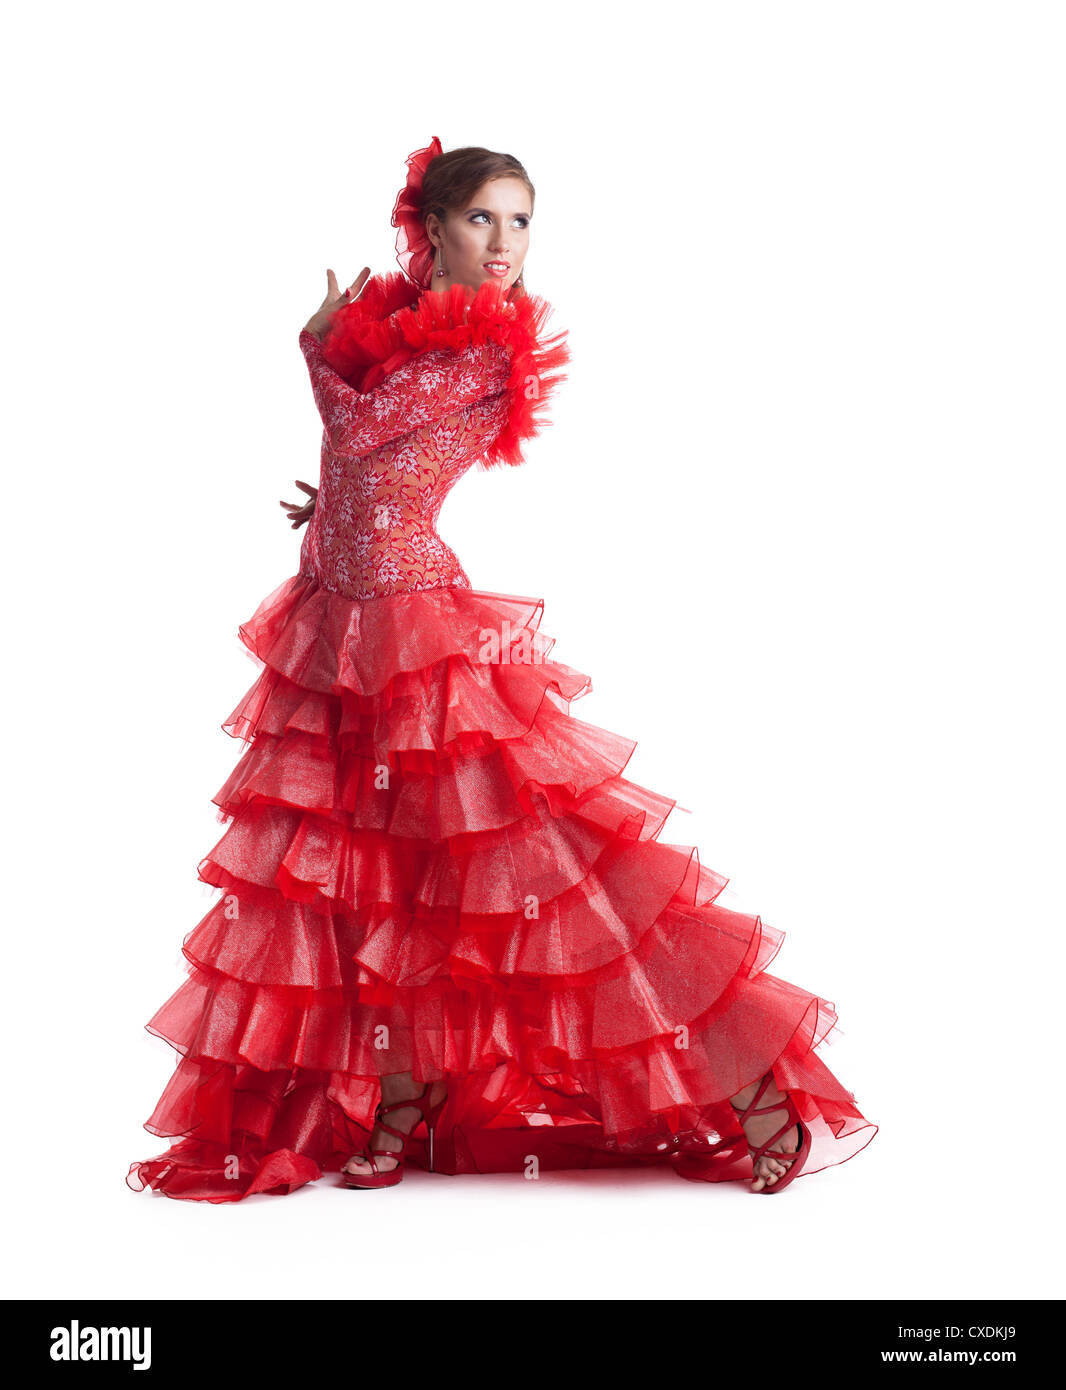 Femme en costume danseuse de flamenco rouge isolé Banque D'Images